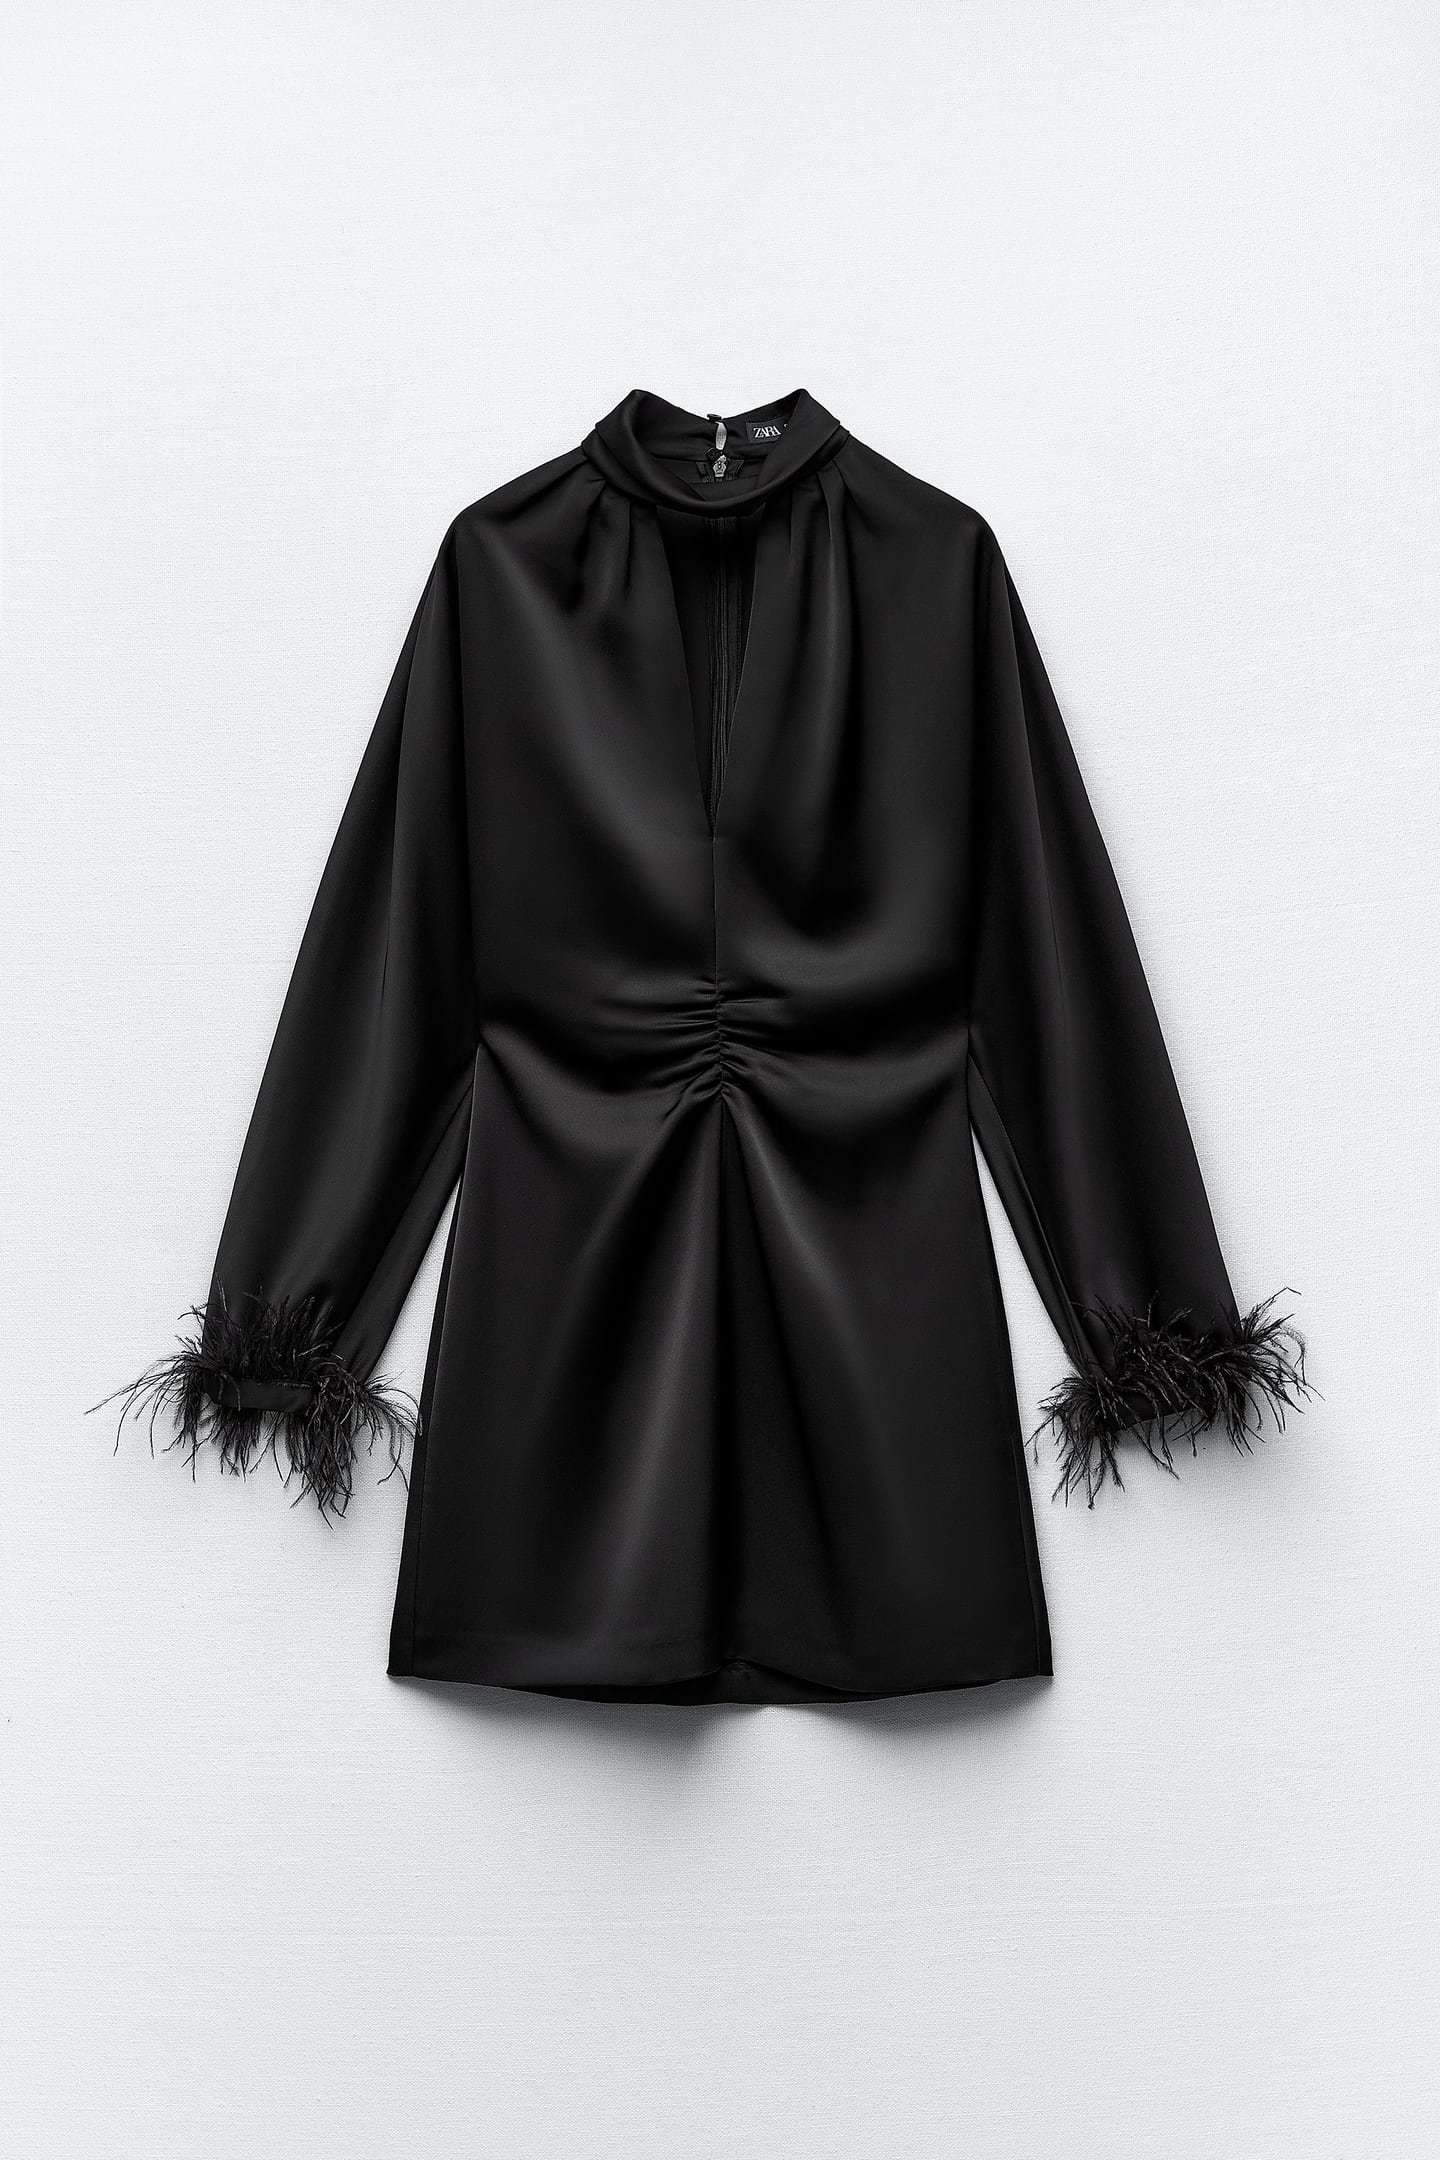 Estos son los vestidos de Zara de nueva temporada: corto satinado con plumas